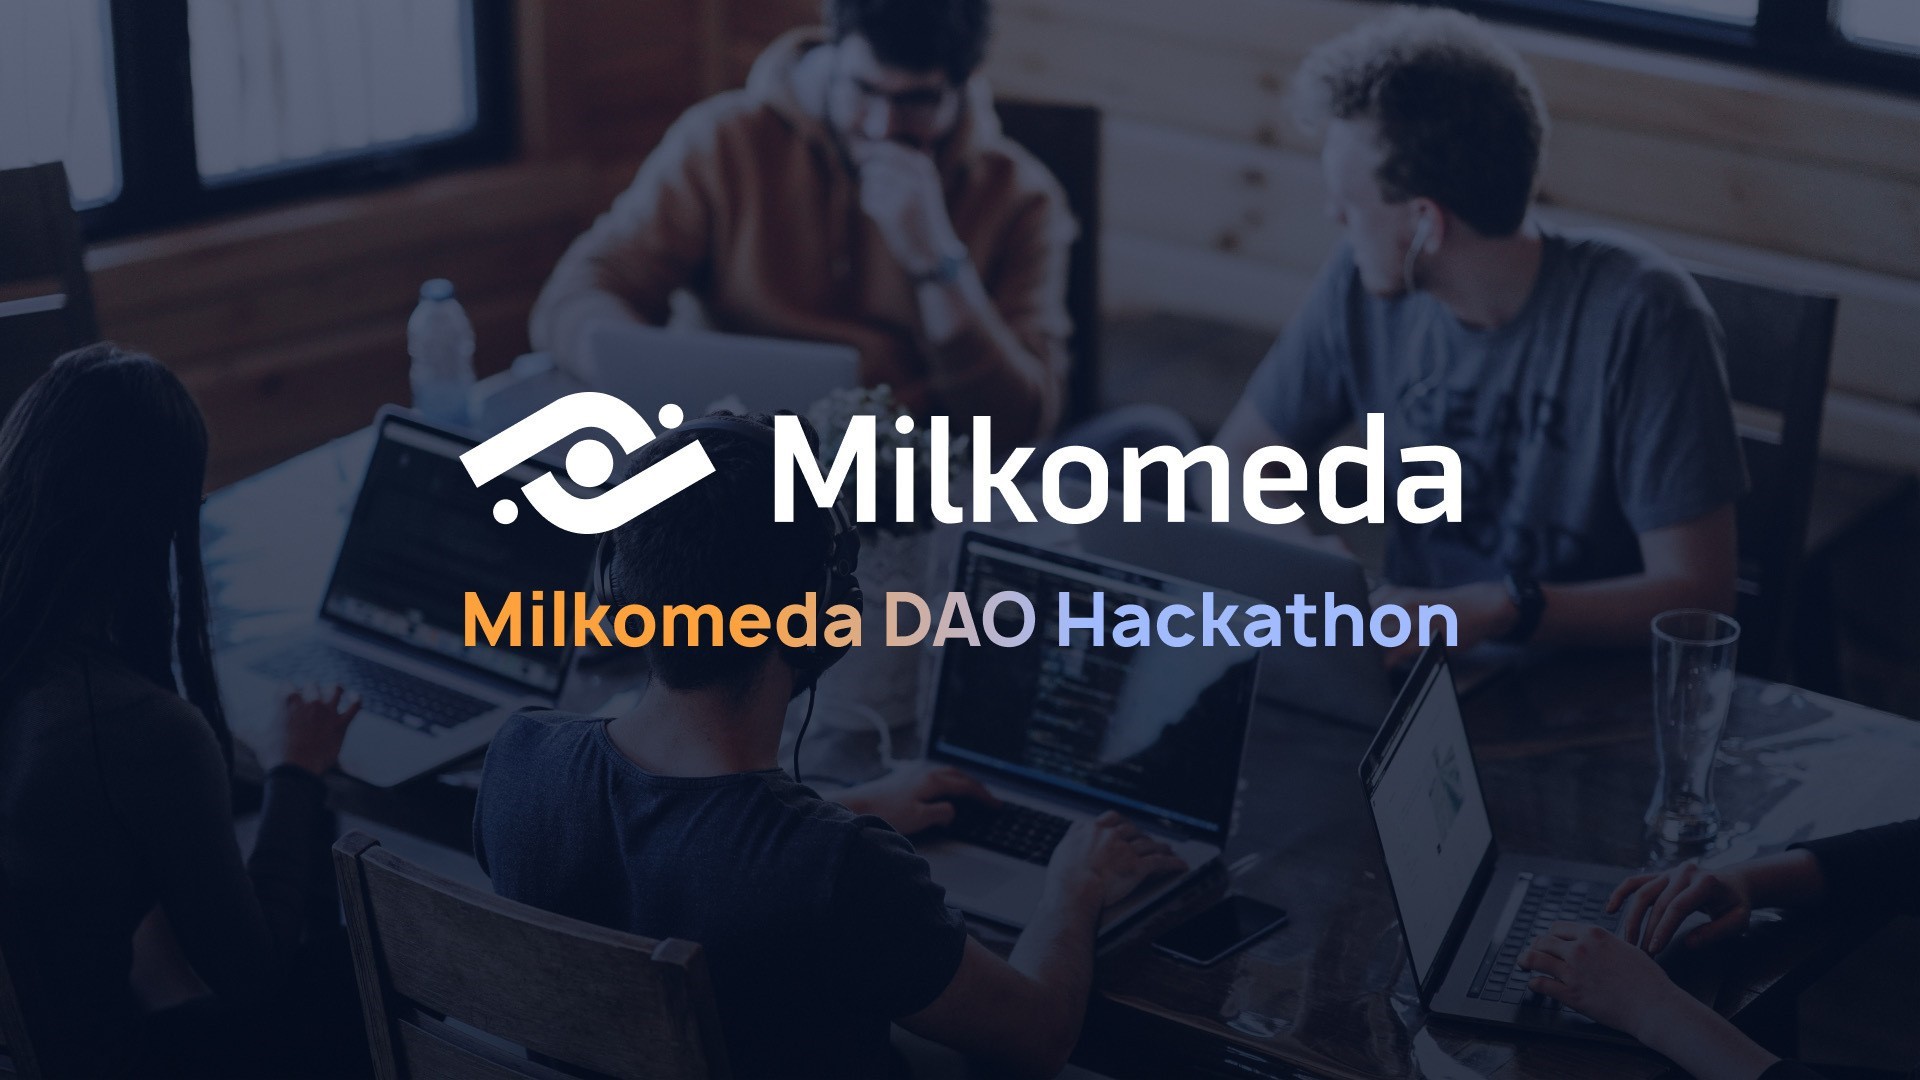 Milkomeda invites developers to build DAOs for Cardano